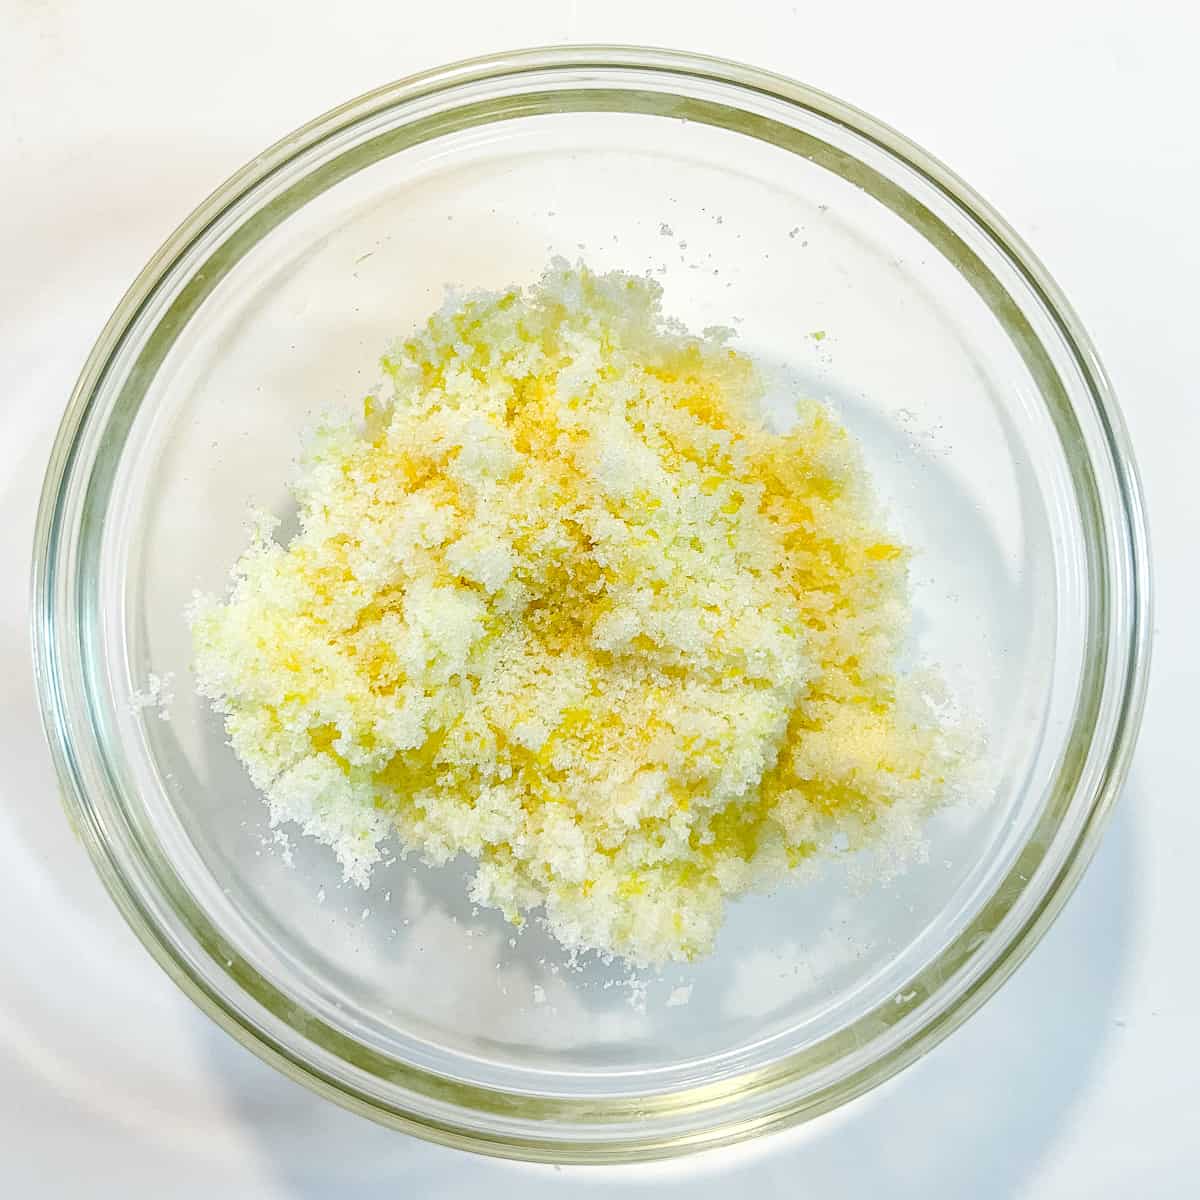 Lemon sugar in a glass bowl.